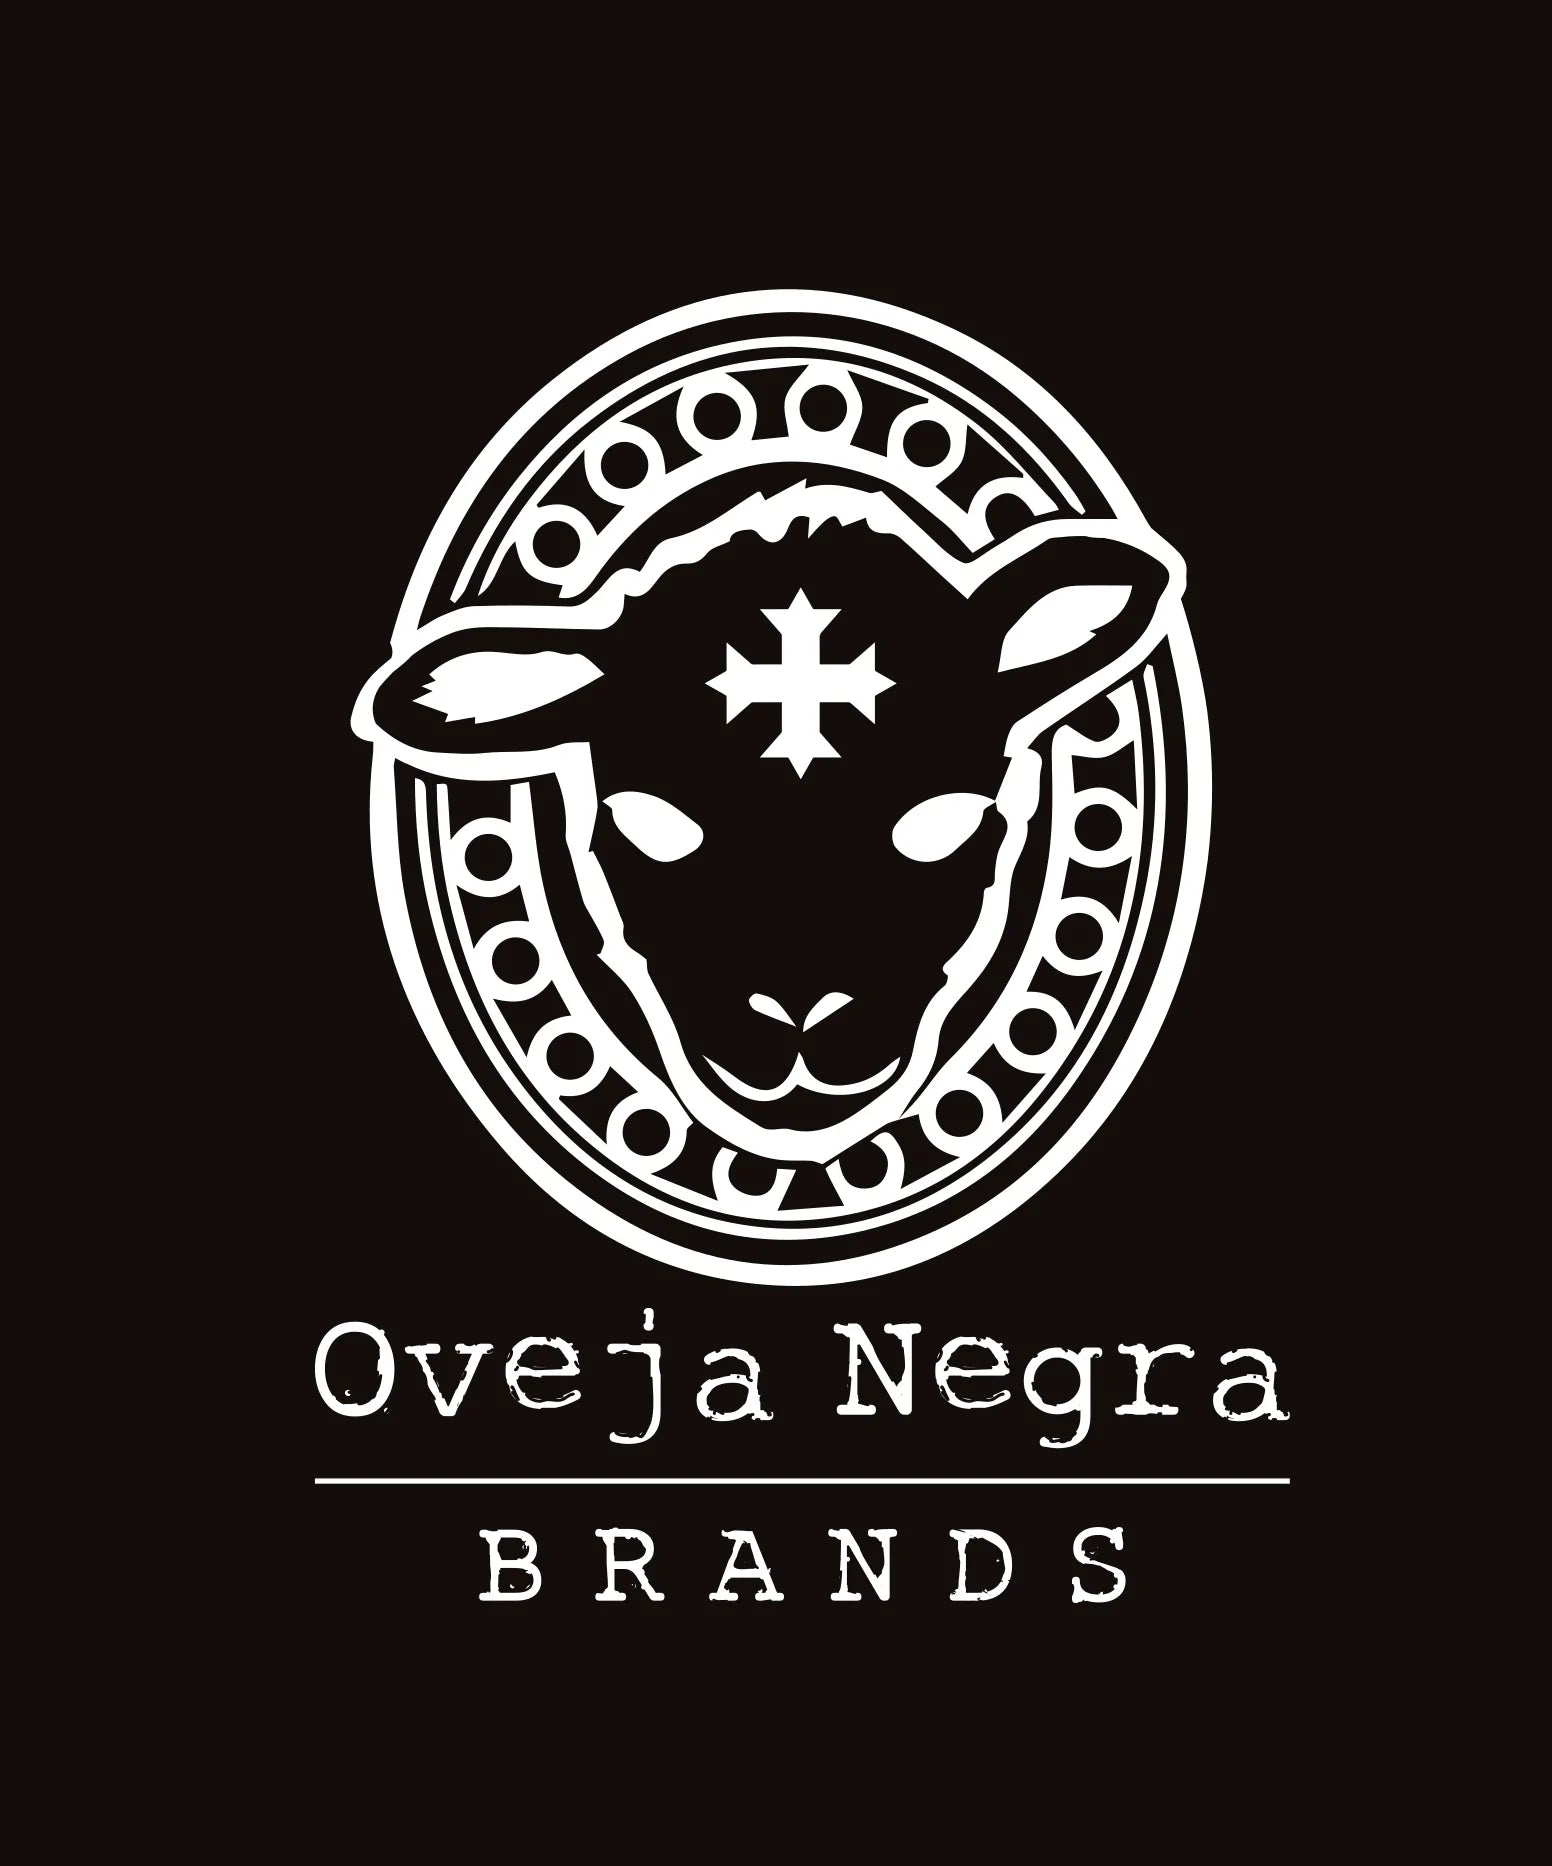 Oveja negra brands logo